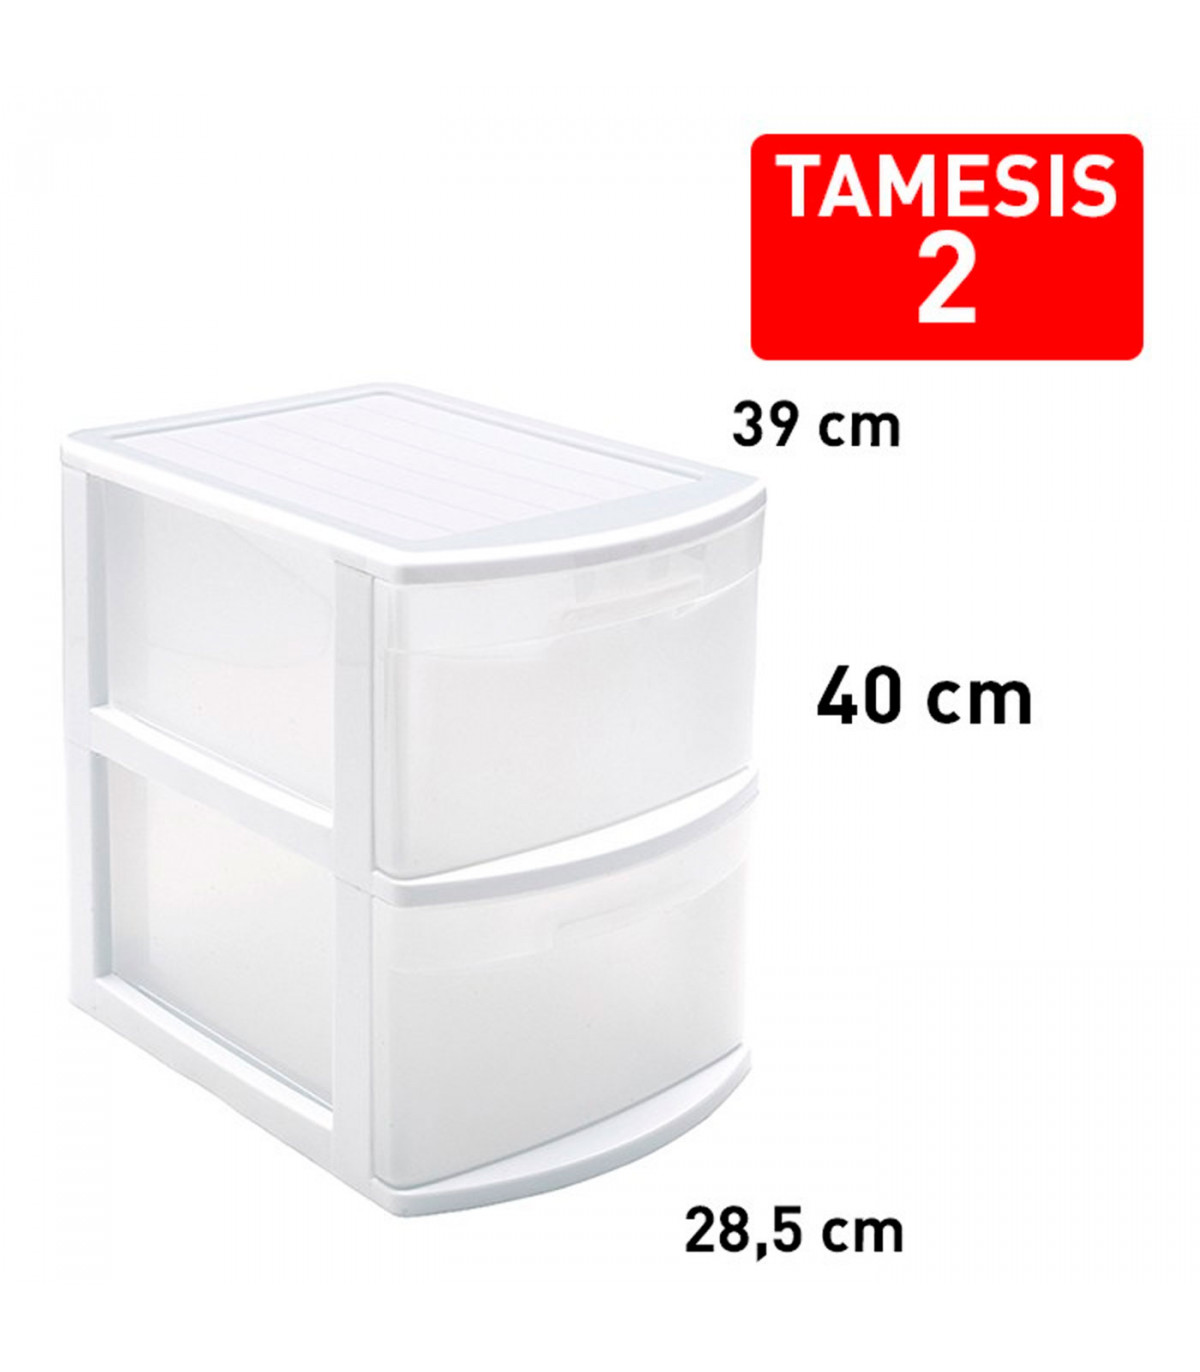 Cajonera estrecha modelo Támesis de plástico, 2 cajones transparentes,  torre de almacenaje, oficina, hogar (Blanco